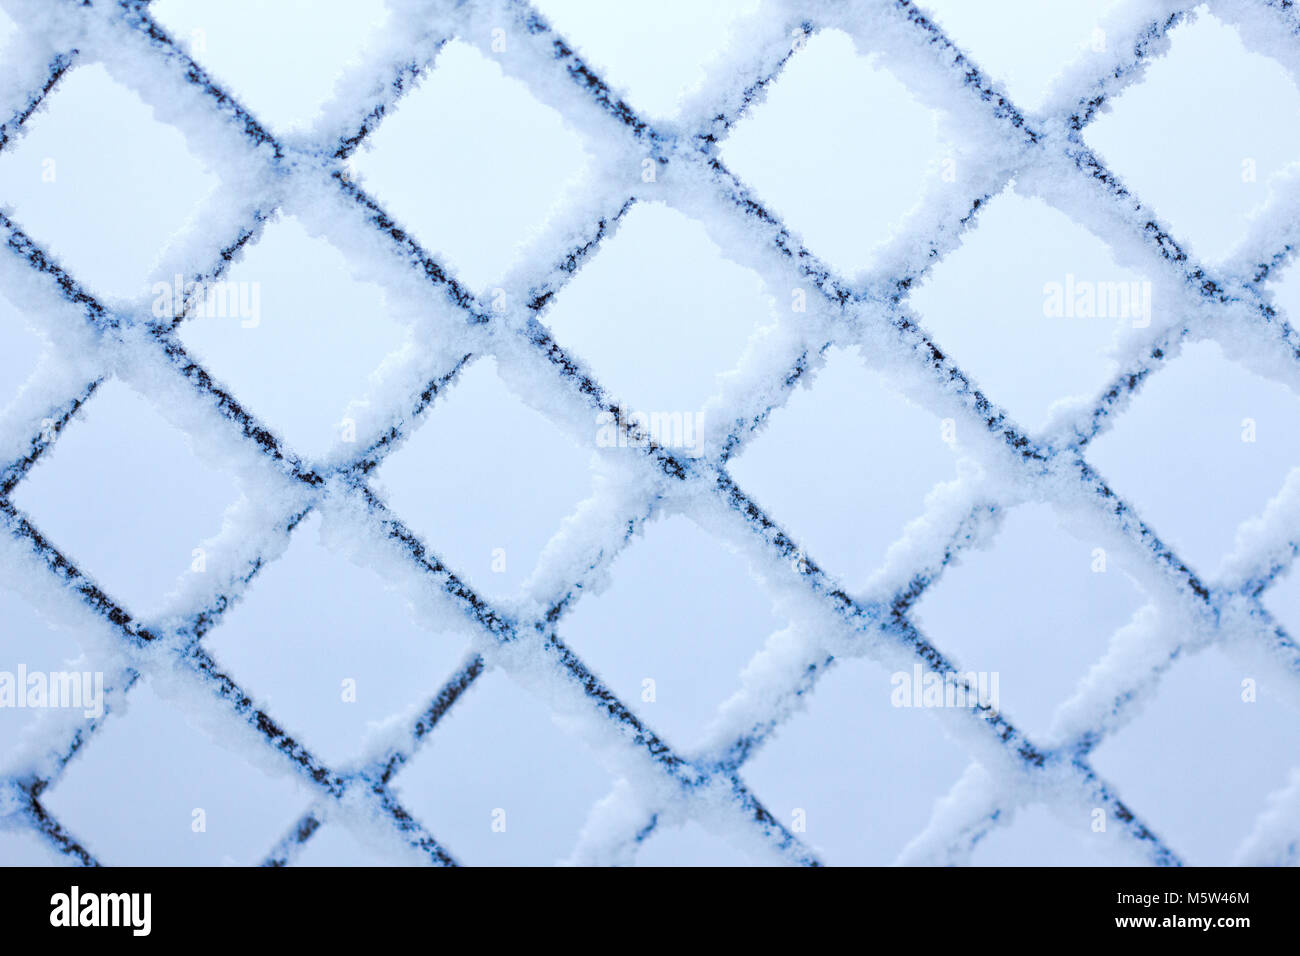 Enrejado en invierno el frío metal textura rhombus Foto de stock